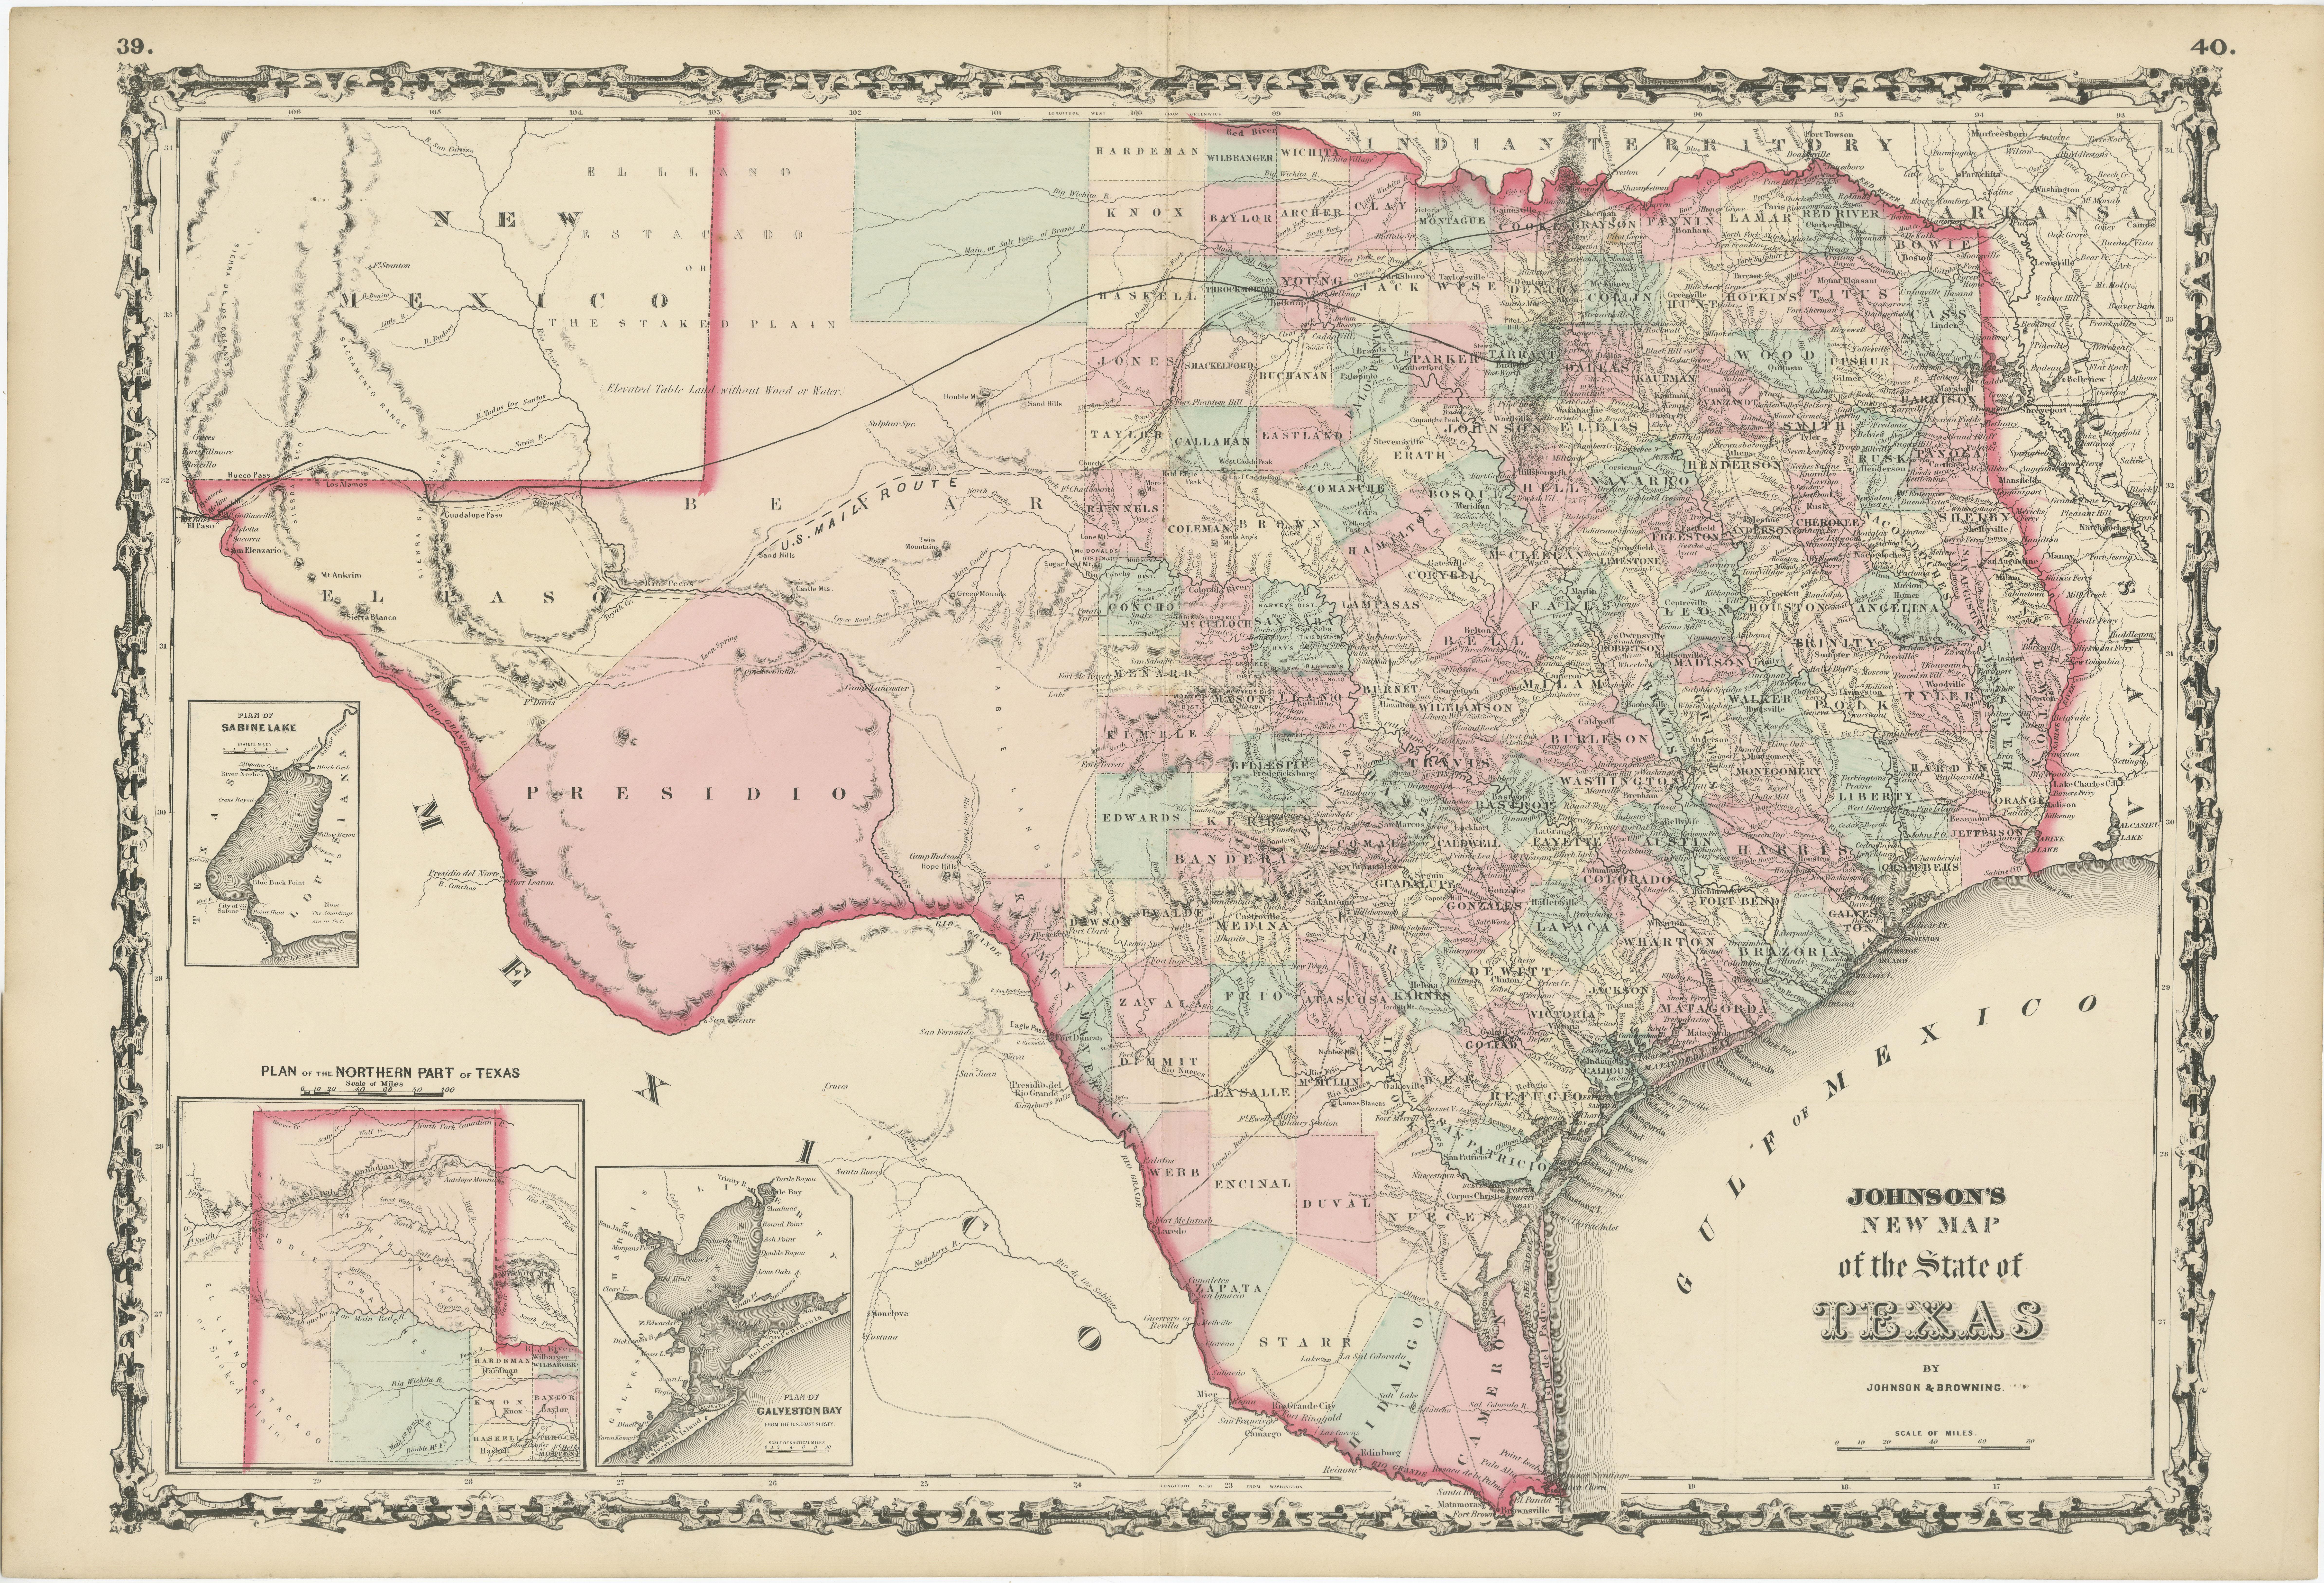 Antike Karte mit dem Titel 'Johnson's New Map of the State of Texas' Große Karte von Texas, zeigt Eisenbahnlinien, Poststraßen, die U.S. Mail Route, Flüsse, Häfen, große Städte und Dörfer aus der Mitte des 19. Jahrhunderts. Ein großer Teil des